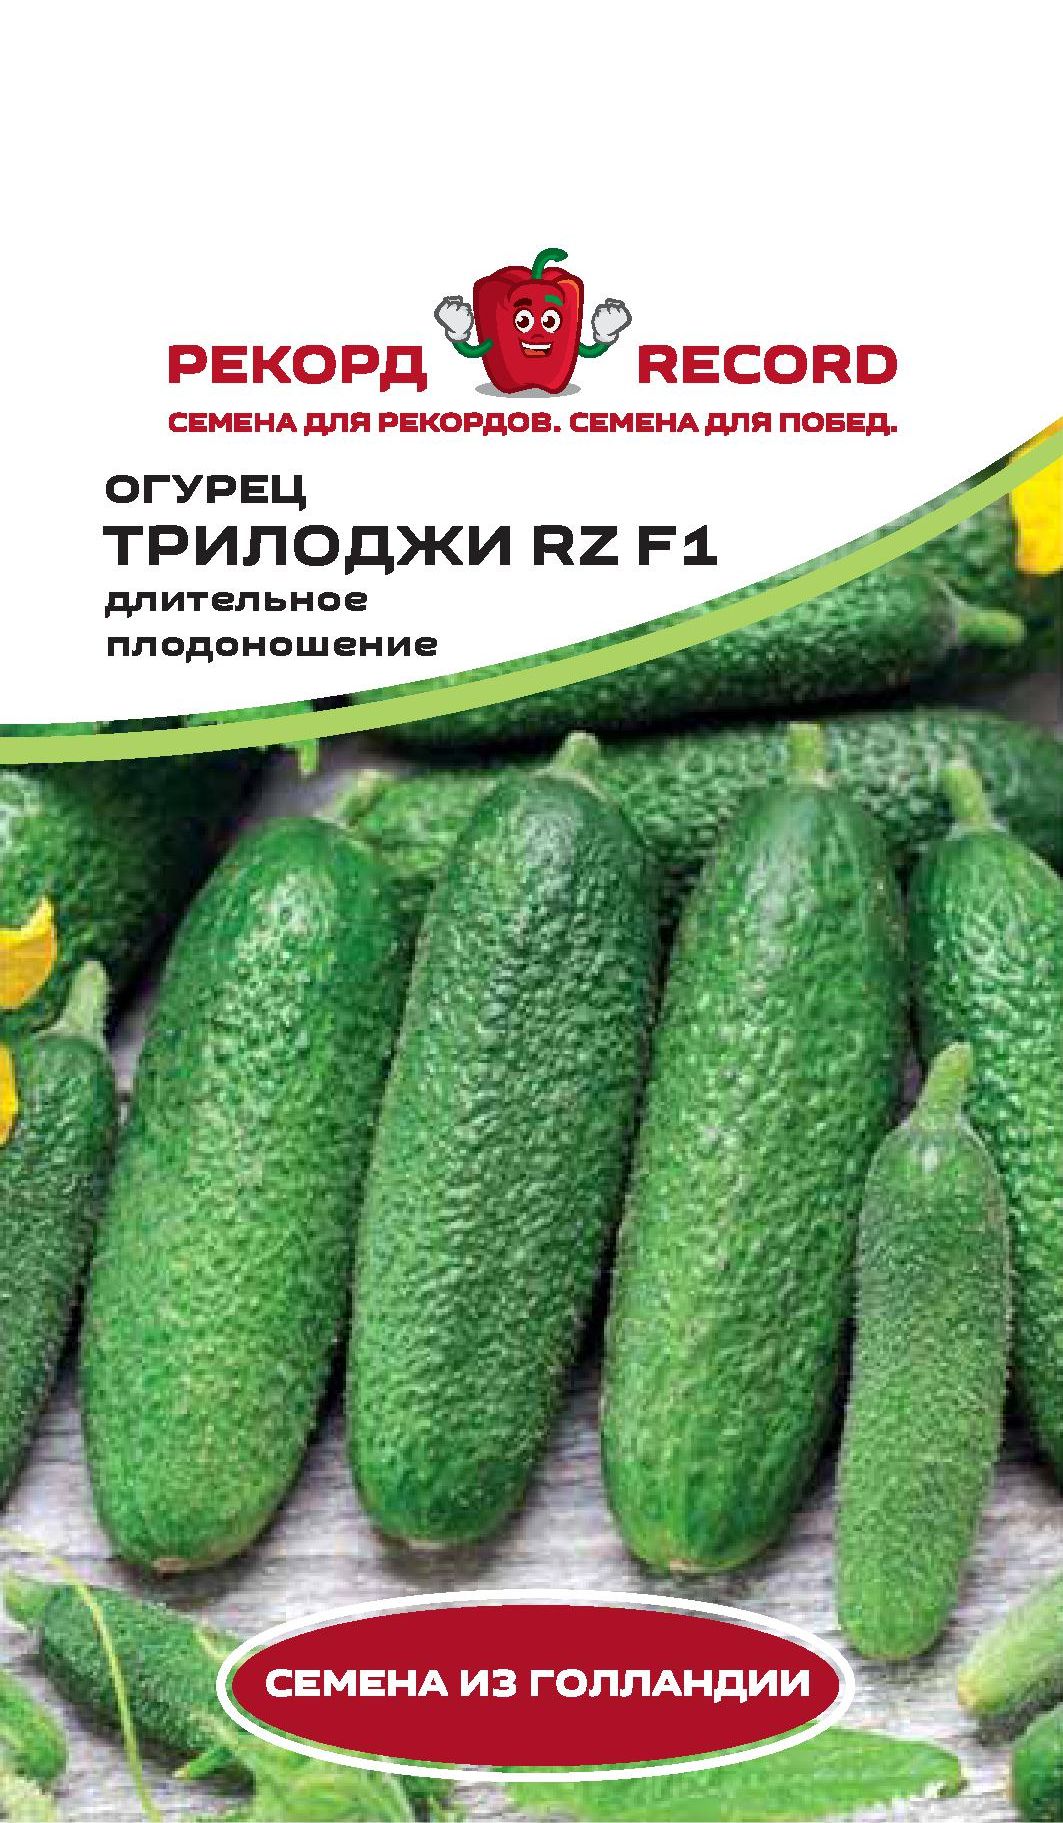 Огурцы трилоджи f1: описание и характеристики сорта. сорт огурцов трилоджи f1: отзывы, фото, урожайность, секреты выращивания